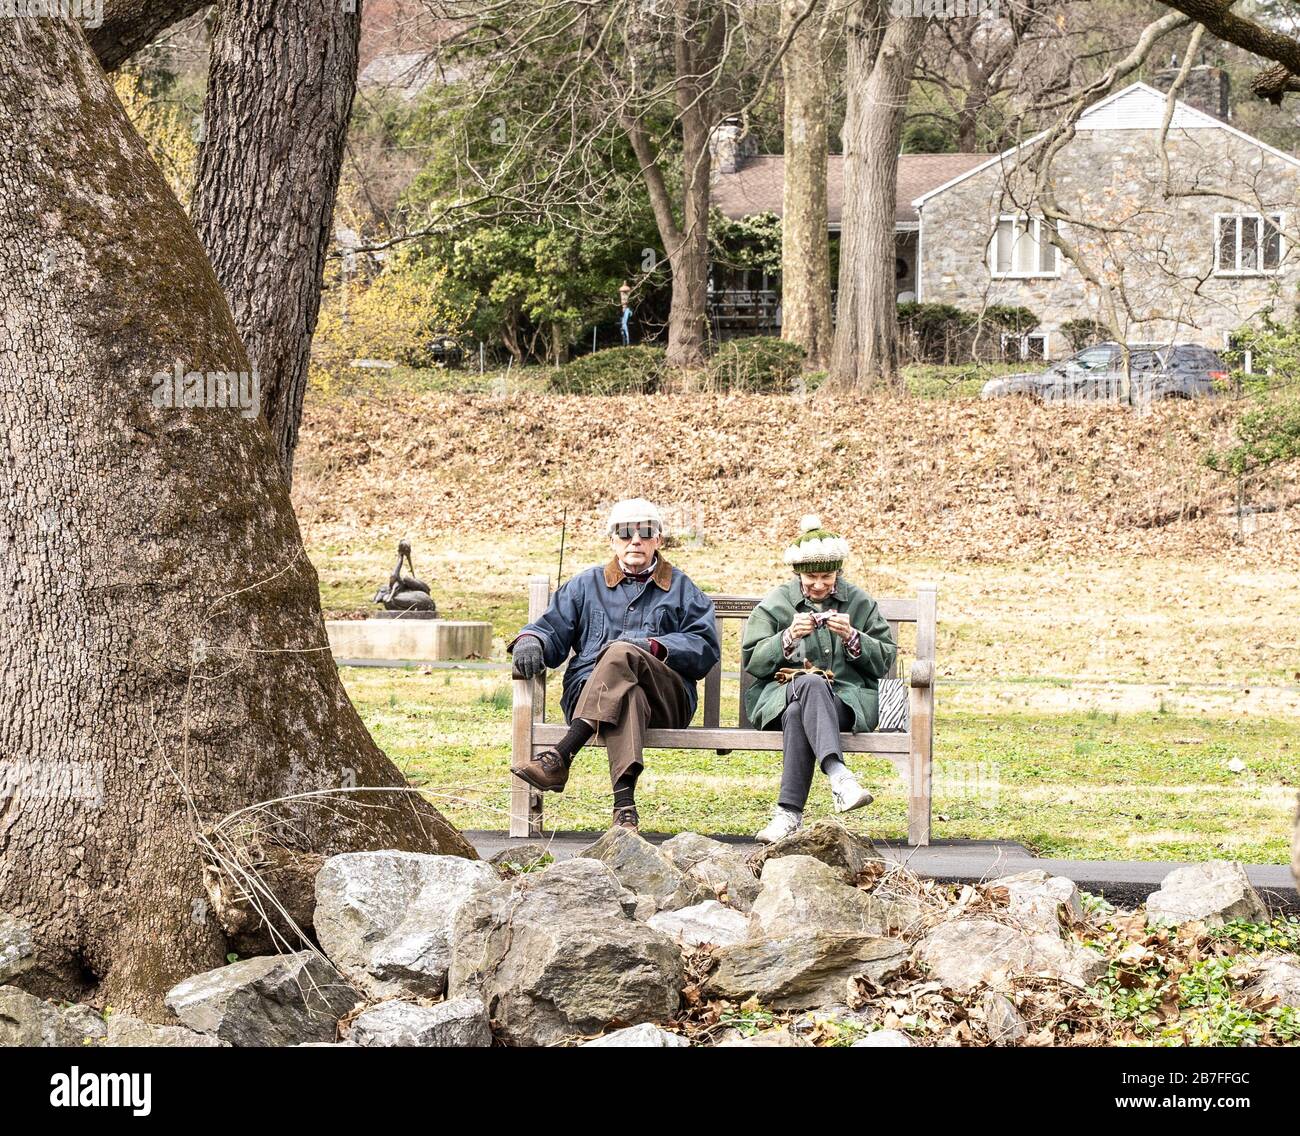 Berks County, Pennsylvania, USA - 14. März 2020: Ältere Paare, die das wärmere Wetter nutzen, sitzen gerne auf einer Bank im Park. Stockfoto